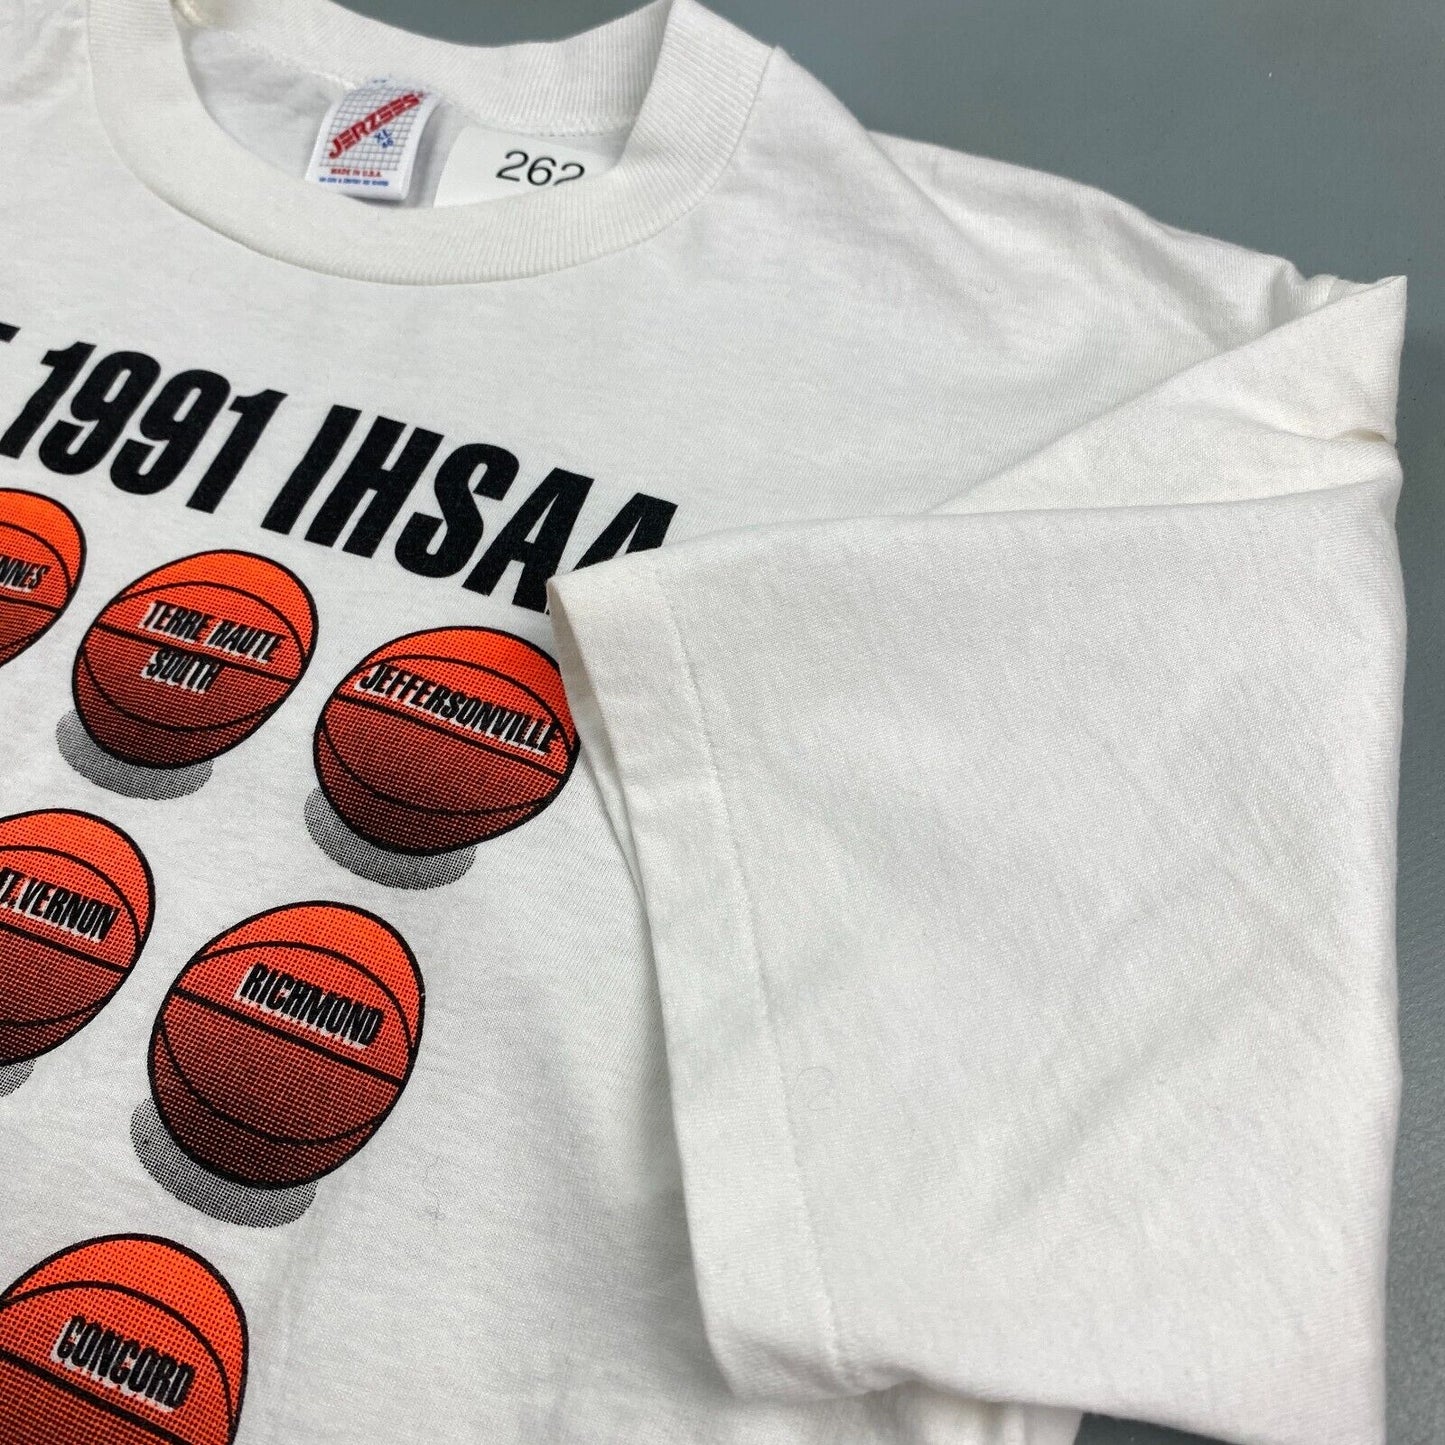 VINTAGE 1991 IHSAA Sweet Sixteen Basketball T-Shirt sz XL Men